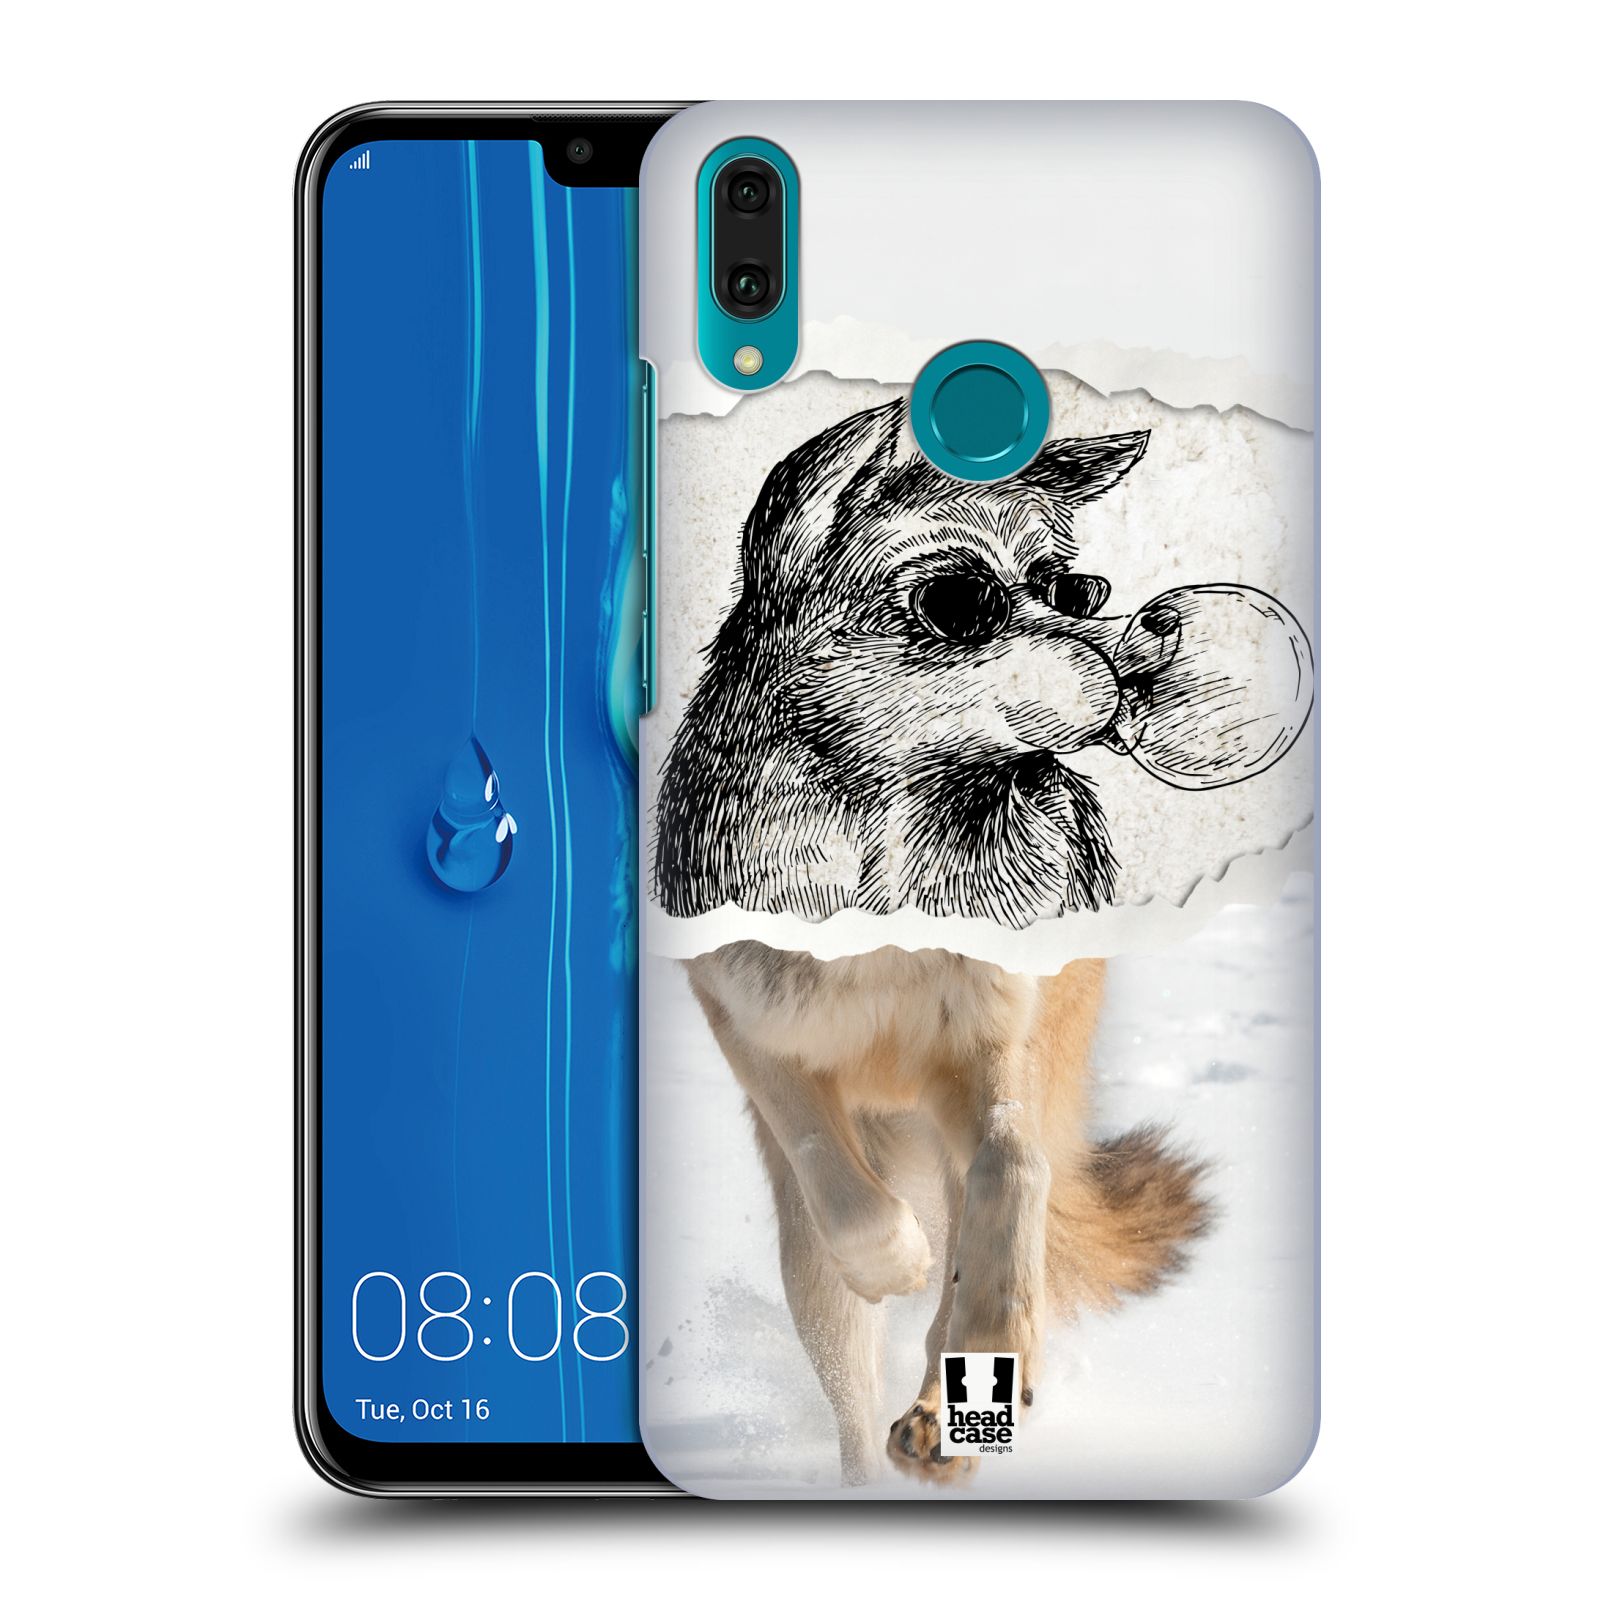 Pouzdro na mobil Huawei Y9 2019 - HEAD CASE - vzor zvířata koláž vlk pohodář